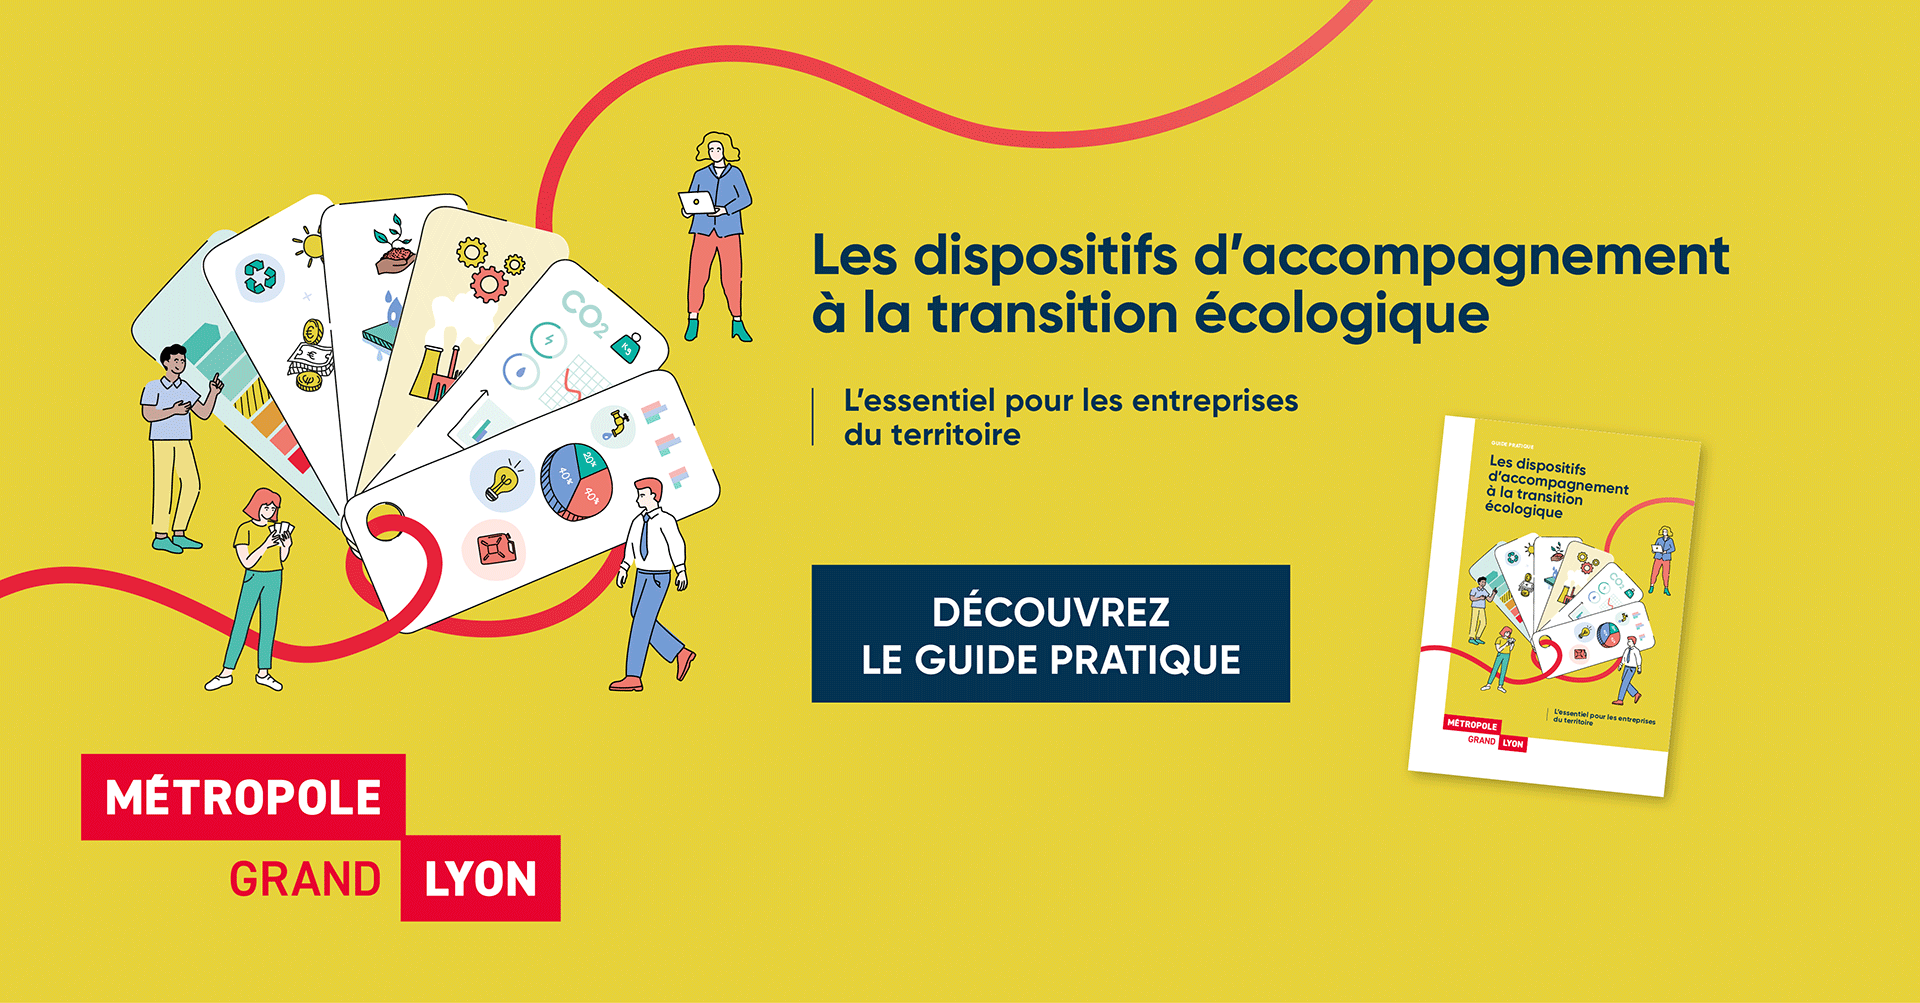 Découvrez le guide pratique des dispositifs d’accompagnement à la transition écologique pour les entreprises de la métropole de Lyon